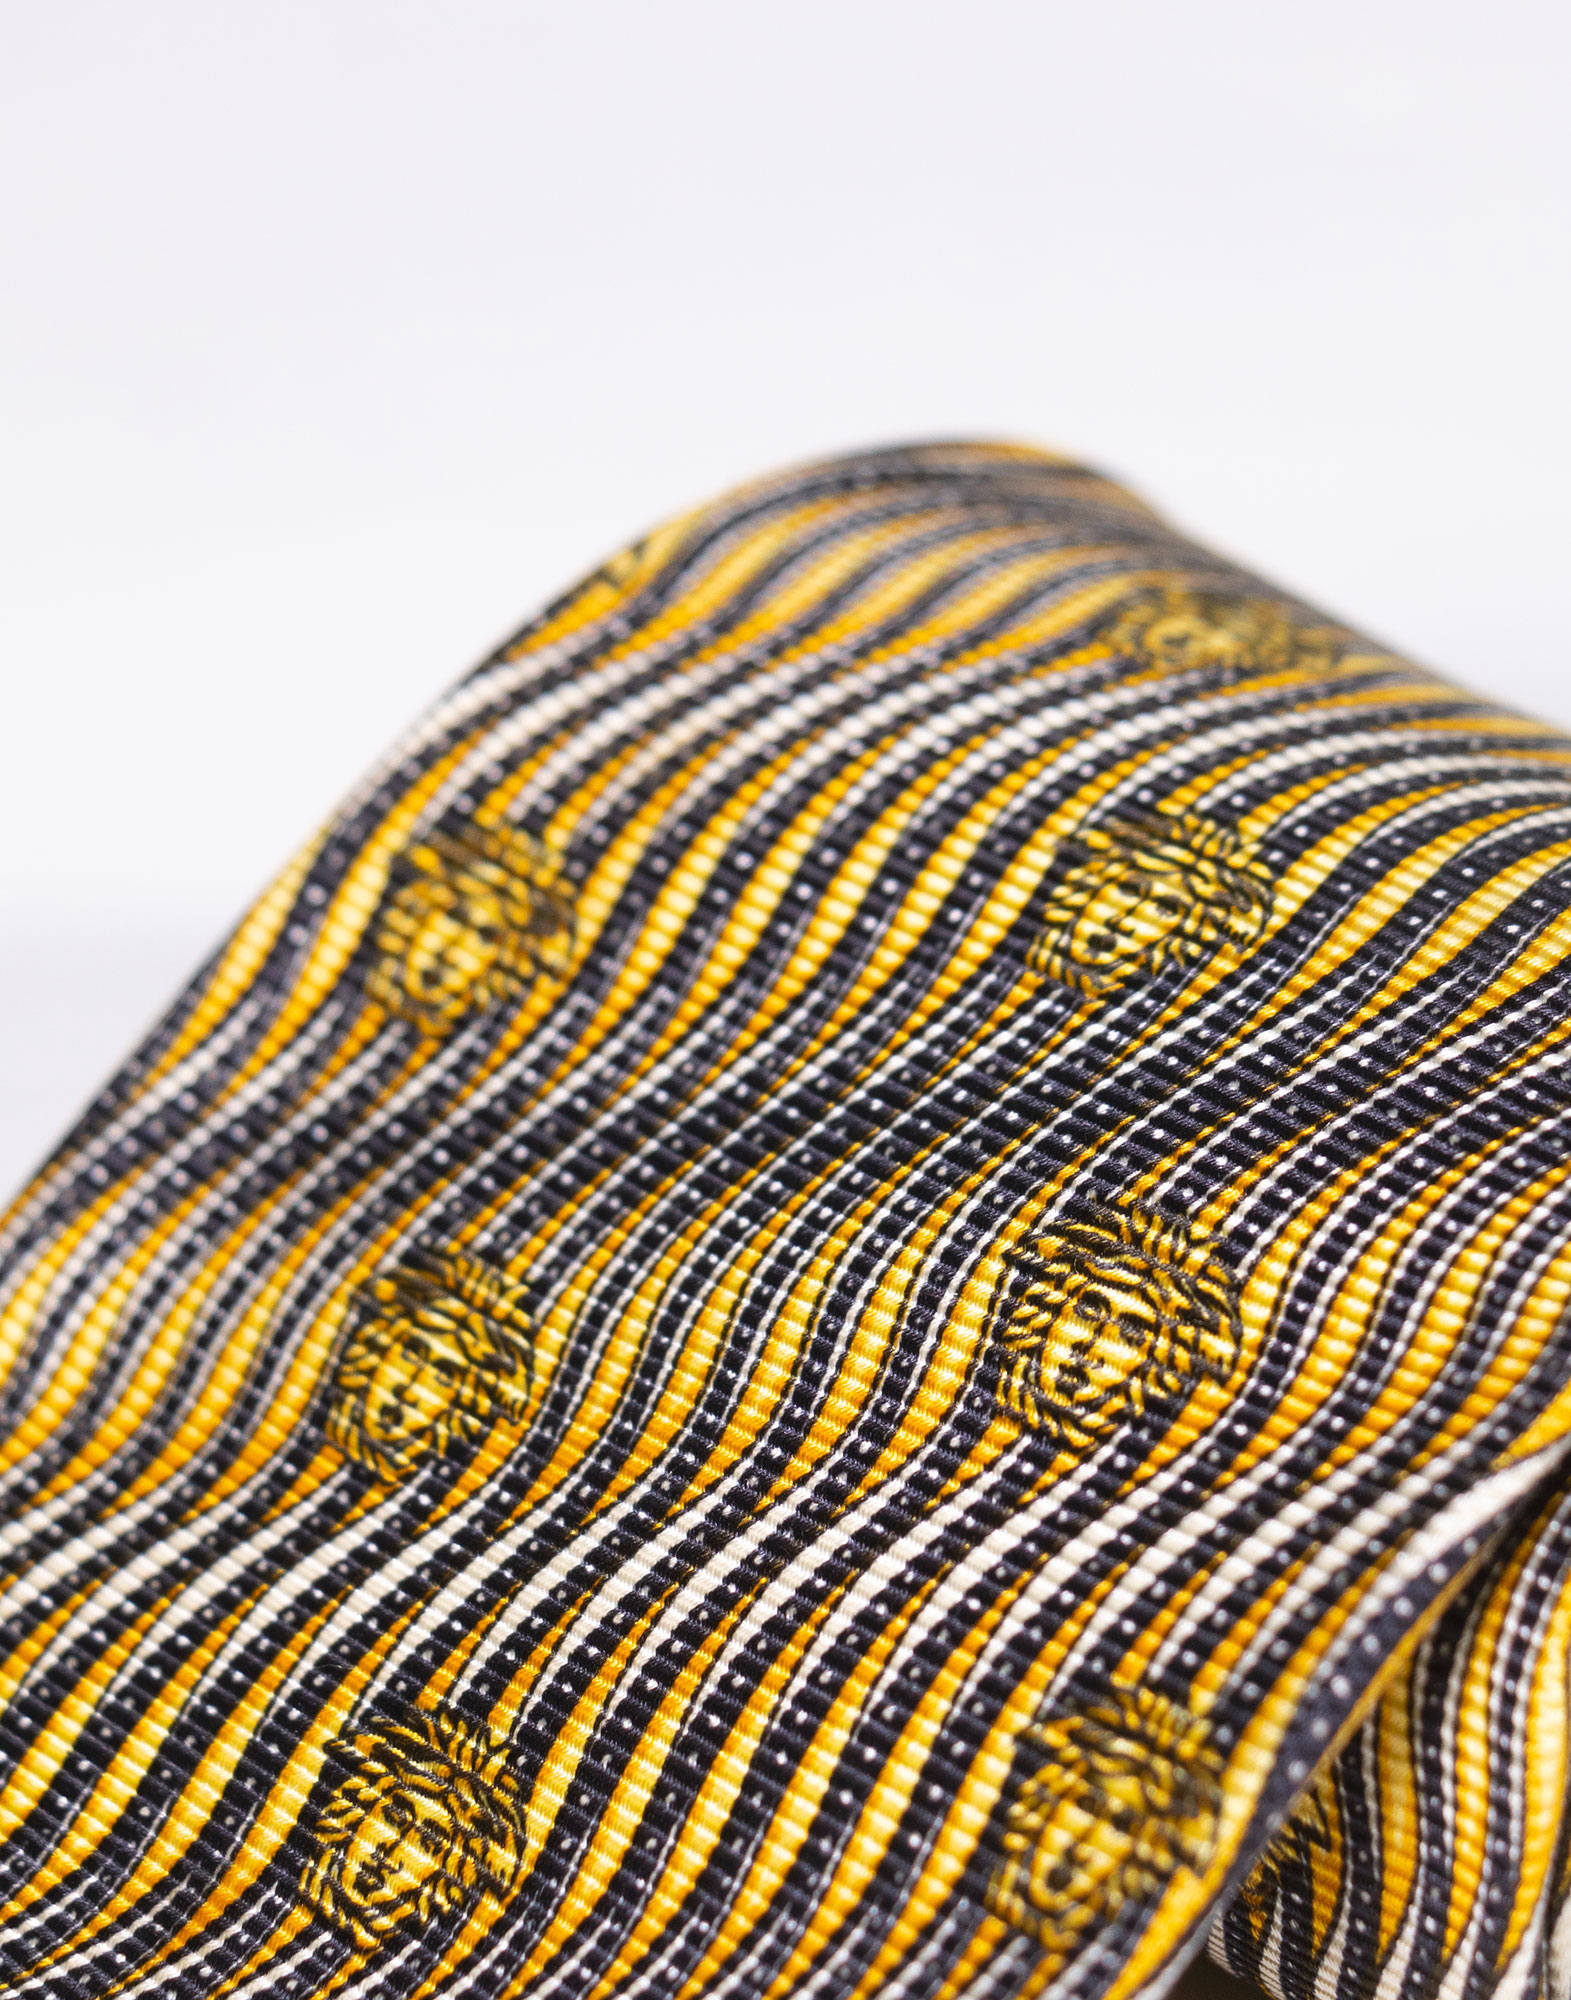 Gianni Versace - 80s Silk necktie